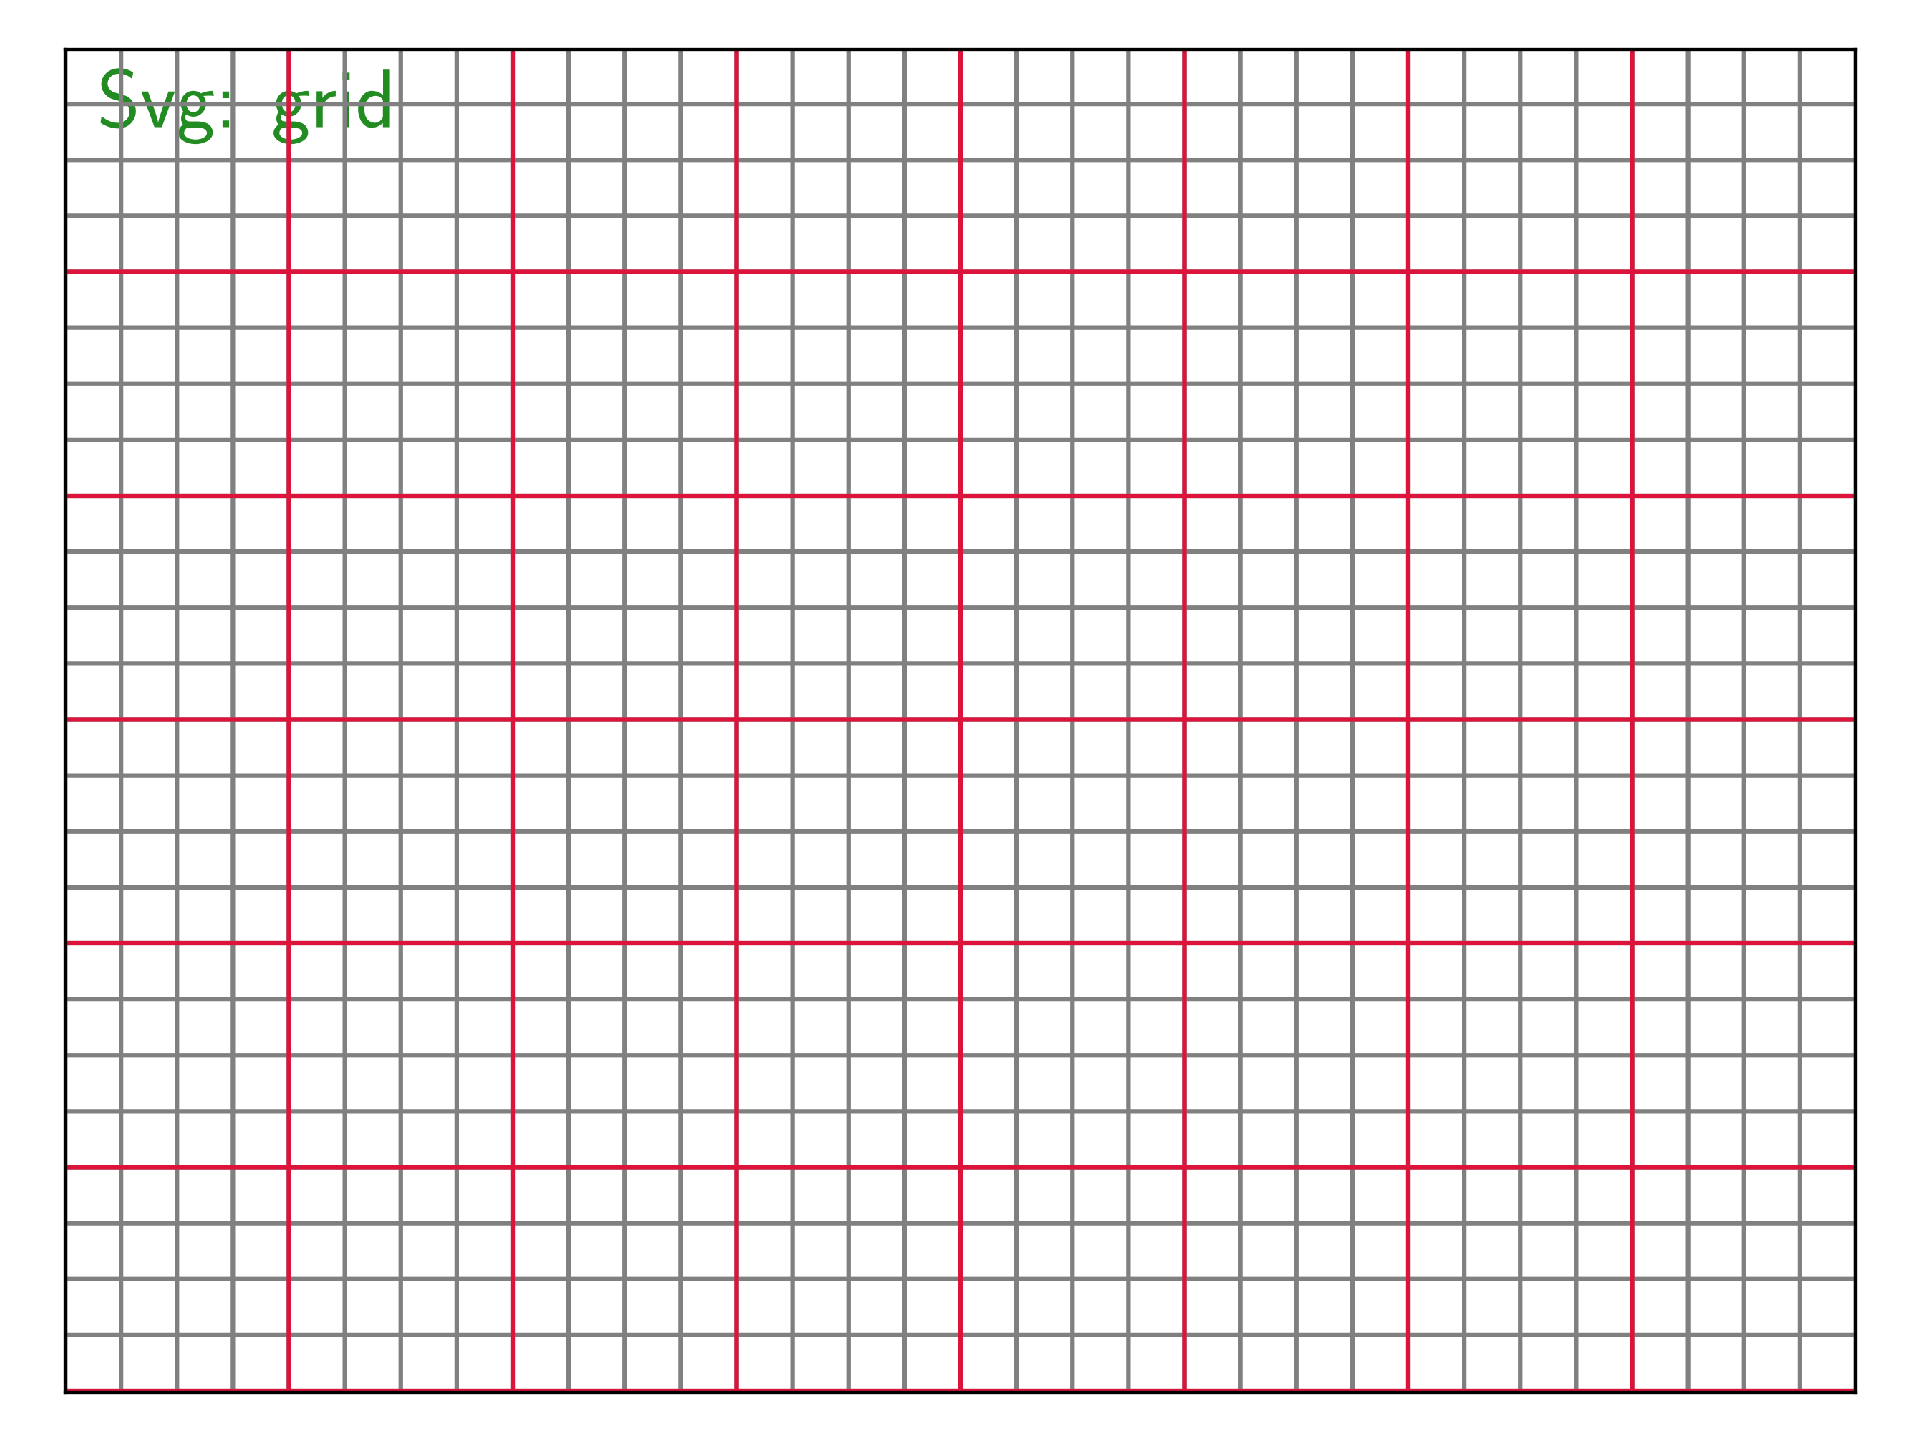 ../_images/sphx_glr_plot_grid_001.png